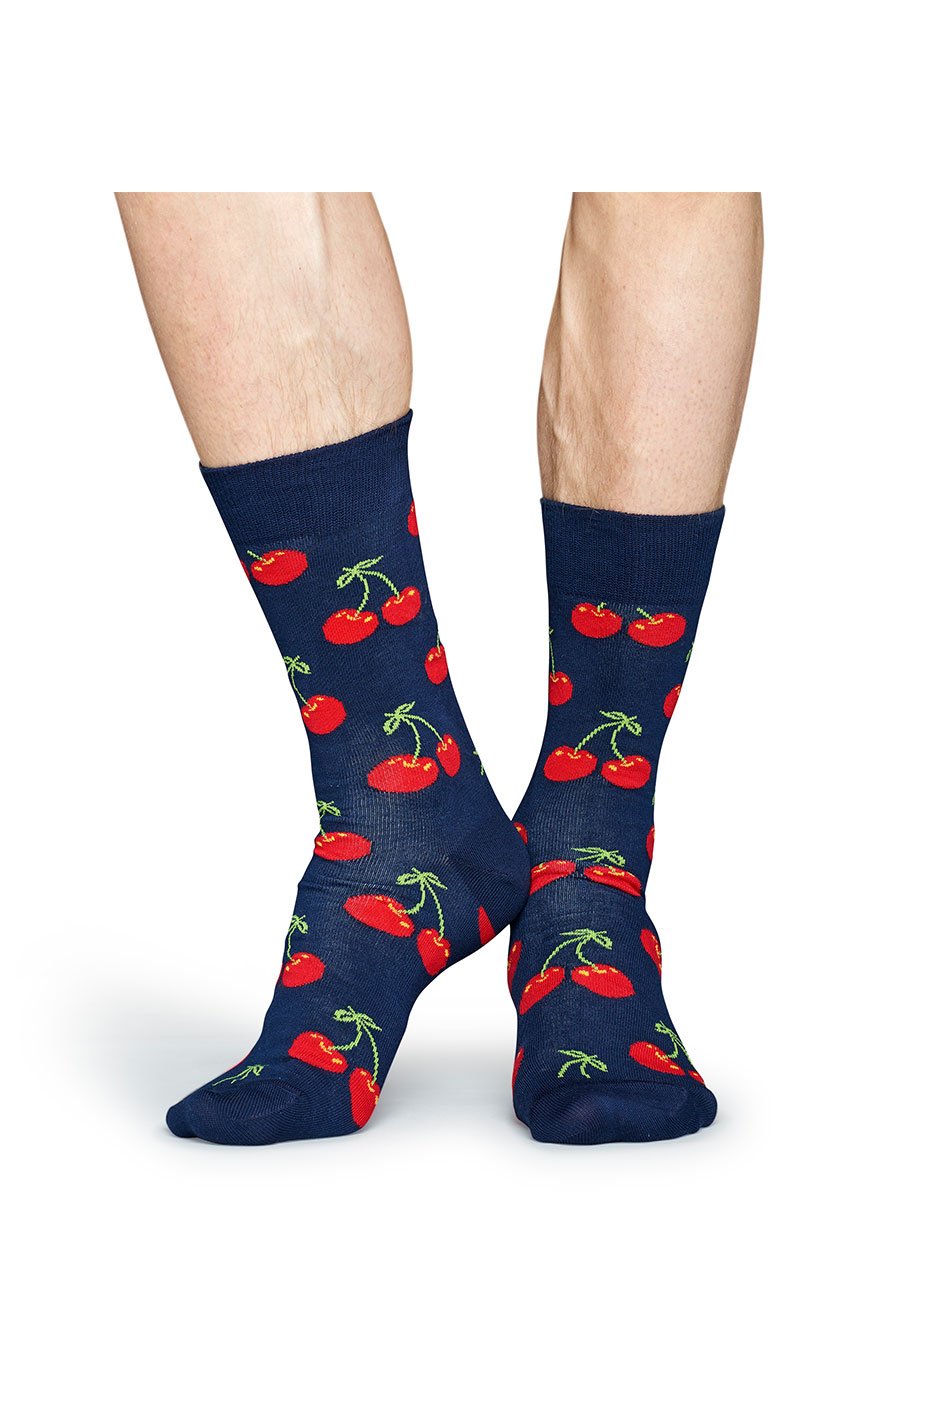 Happy Socks Men's Cherry Socks